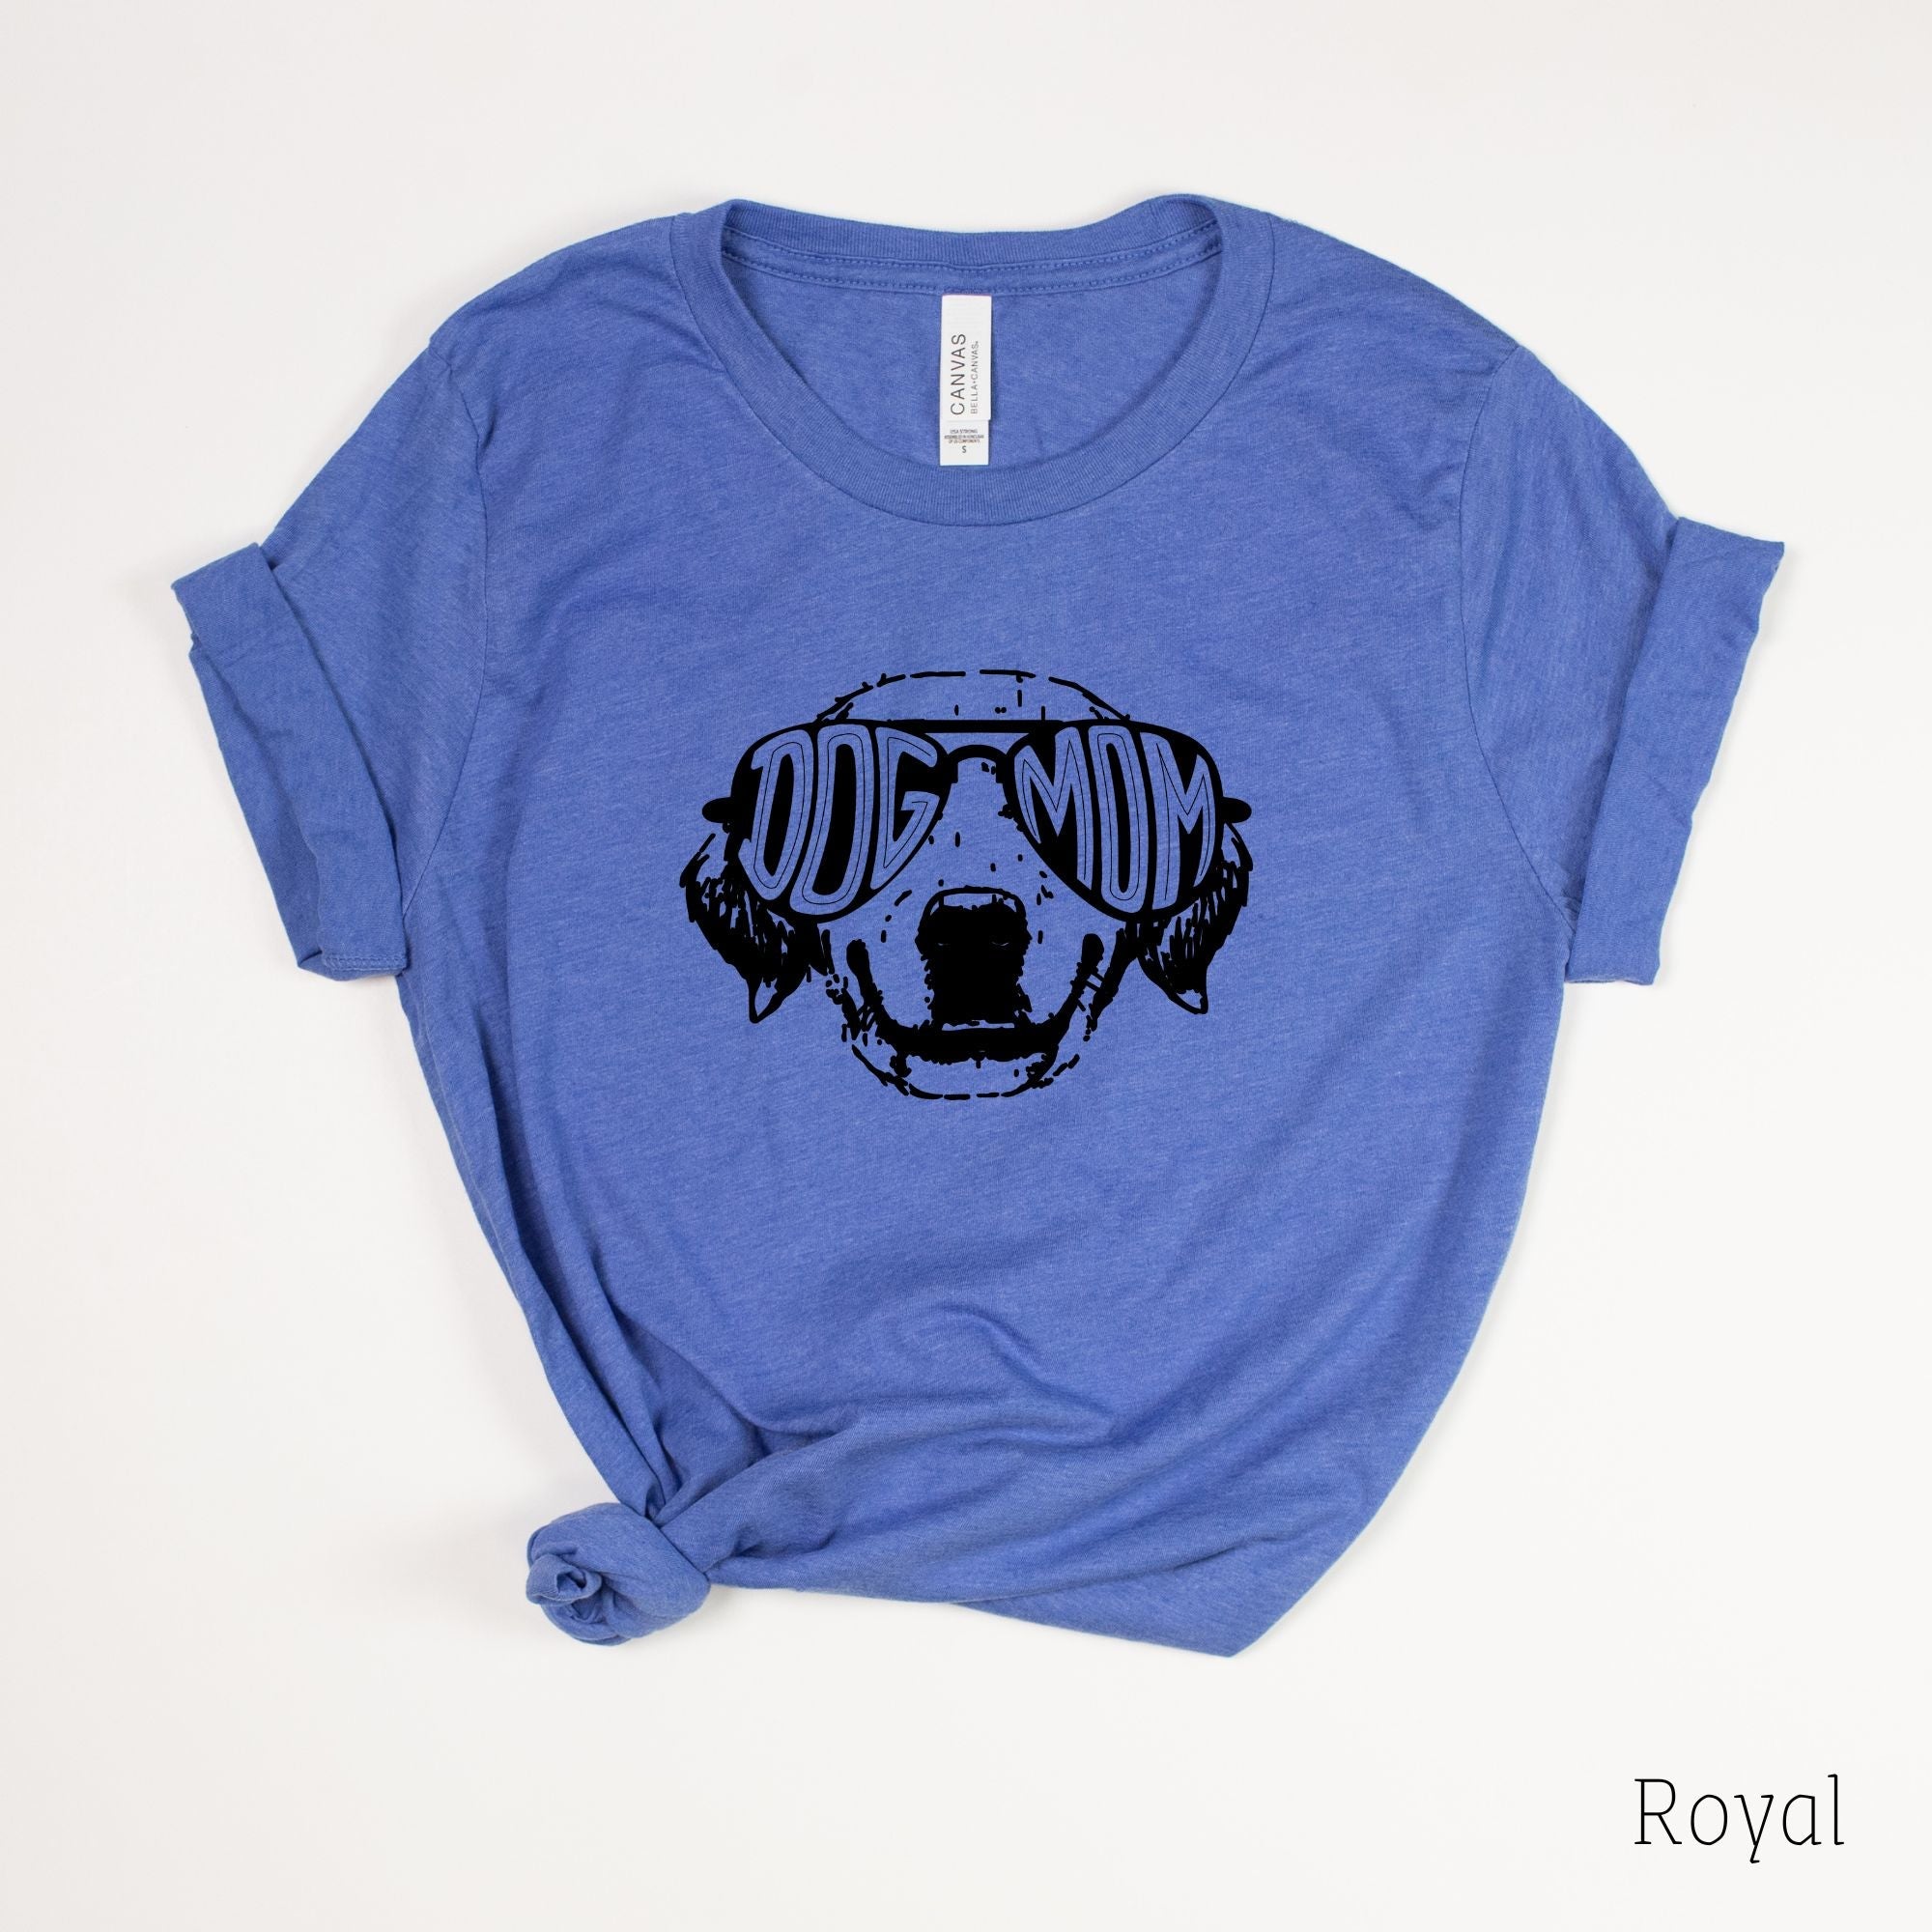 Dog Mom Shirt *UNISEX FIT*-208 Tees Wholesale, Idaho